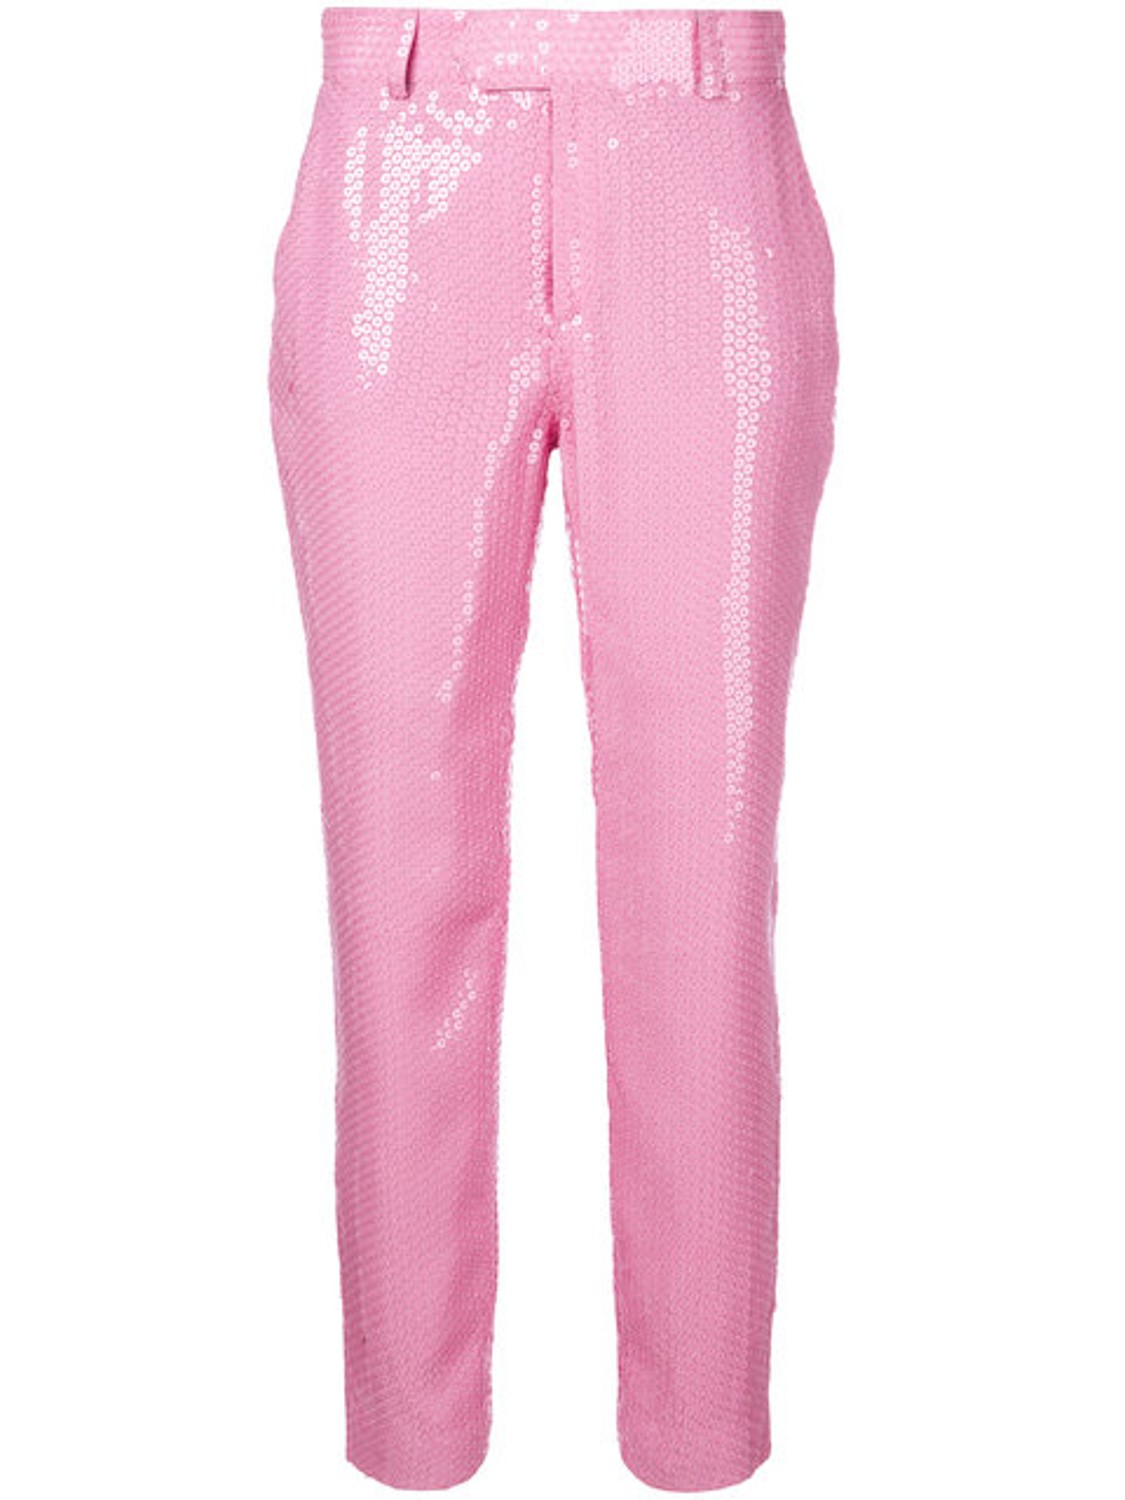 shop MSGM Sales Pantaloni: Pantalone MSGM, rosa, di paillettes, lunghezza alla caviglia, chiusura davanti con bottone e cerniera.

Composizione: 100% viscosa. number 1244